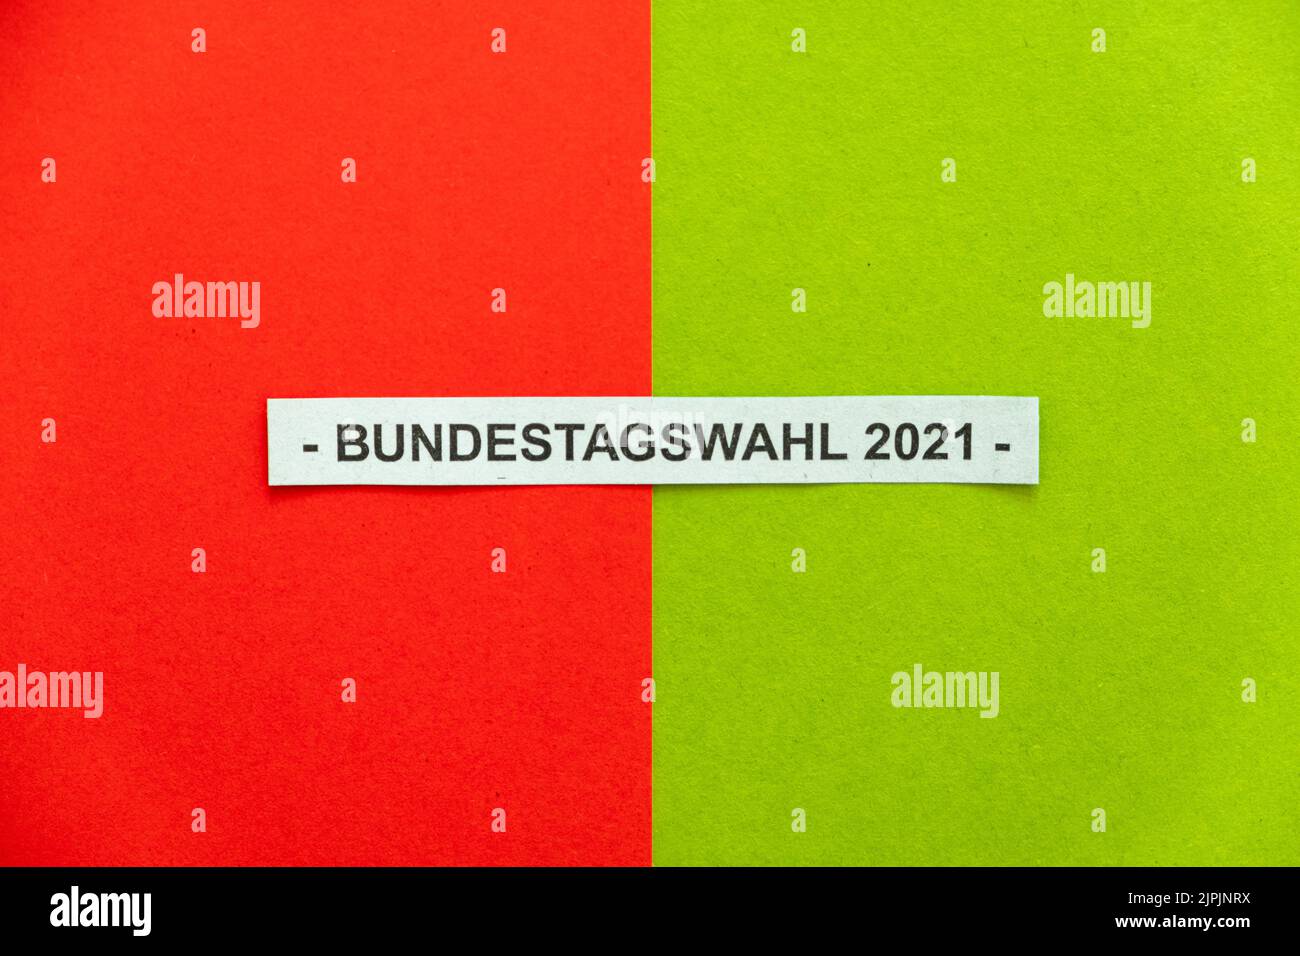 Partei, rot grün, Koalition, Bundestagswahl, 2021, sozialdemokratische partei deutschlands, politische farbe, bündnis 90/die grünen, parties, Stockfoto